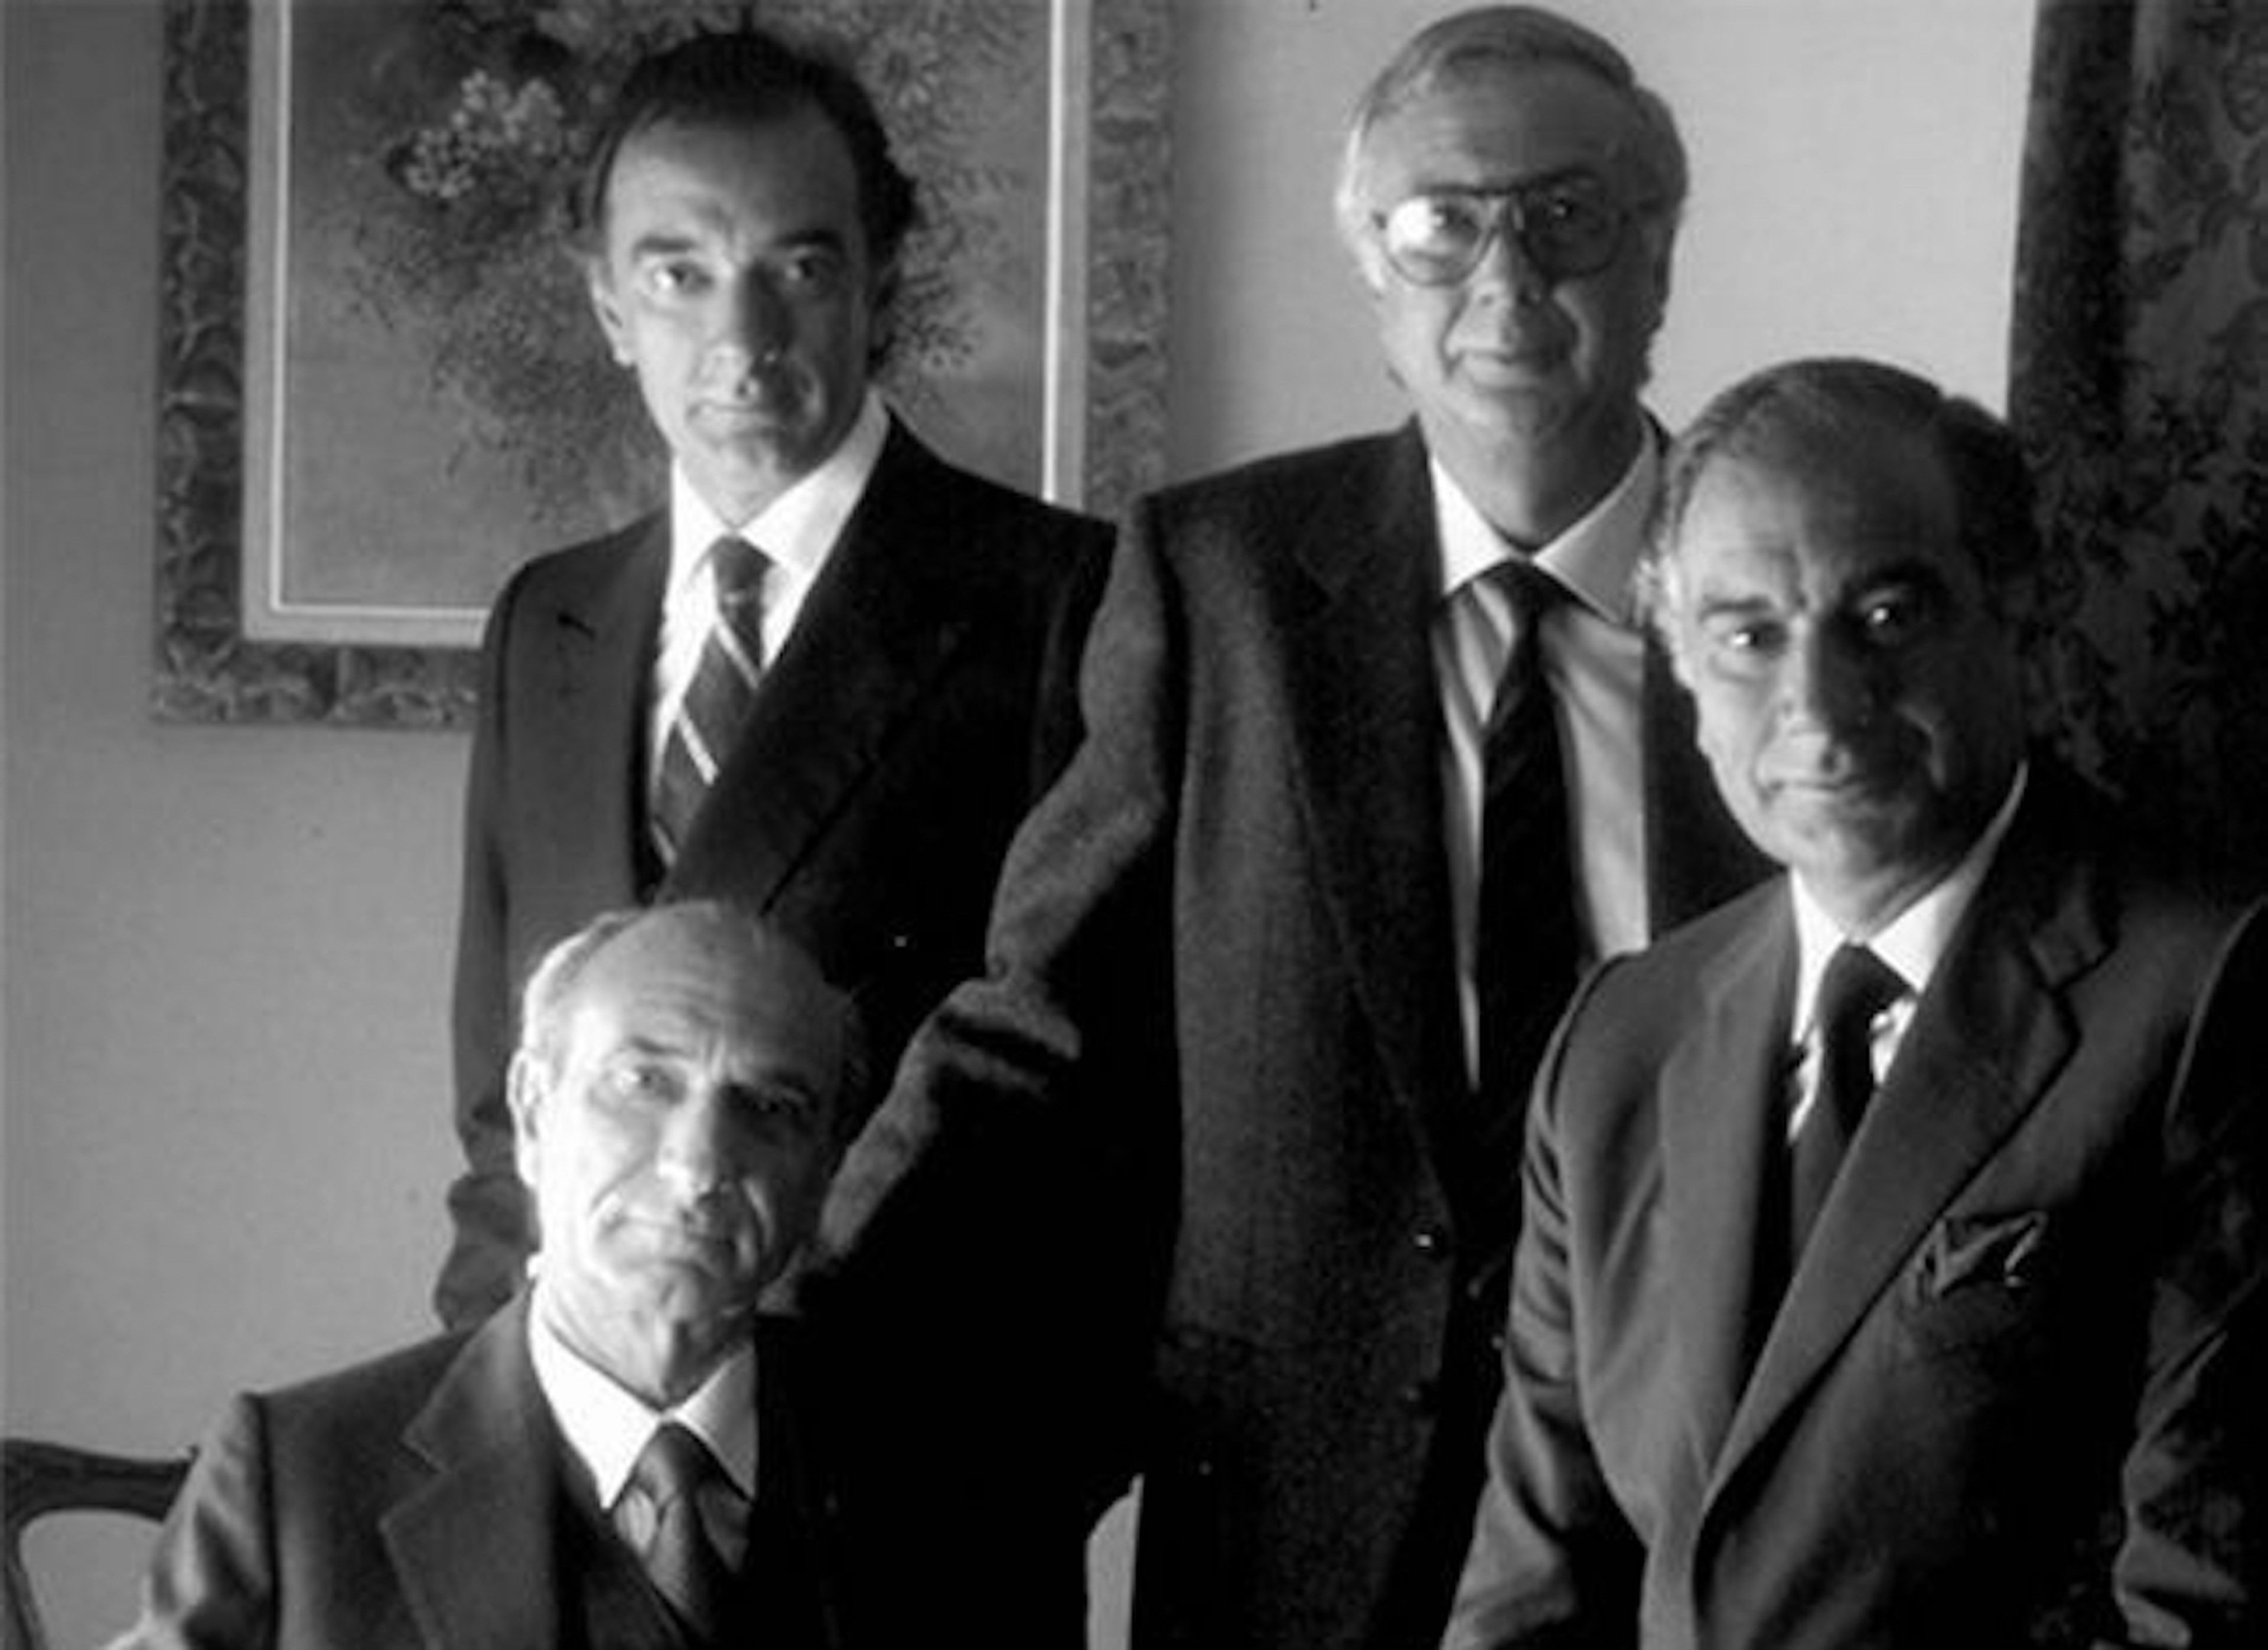 En imagen, Antonio, Mariano, José María y Enrique Puig Planas, la segunda generación familiar de Puig.